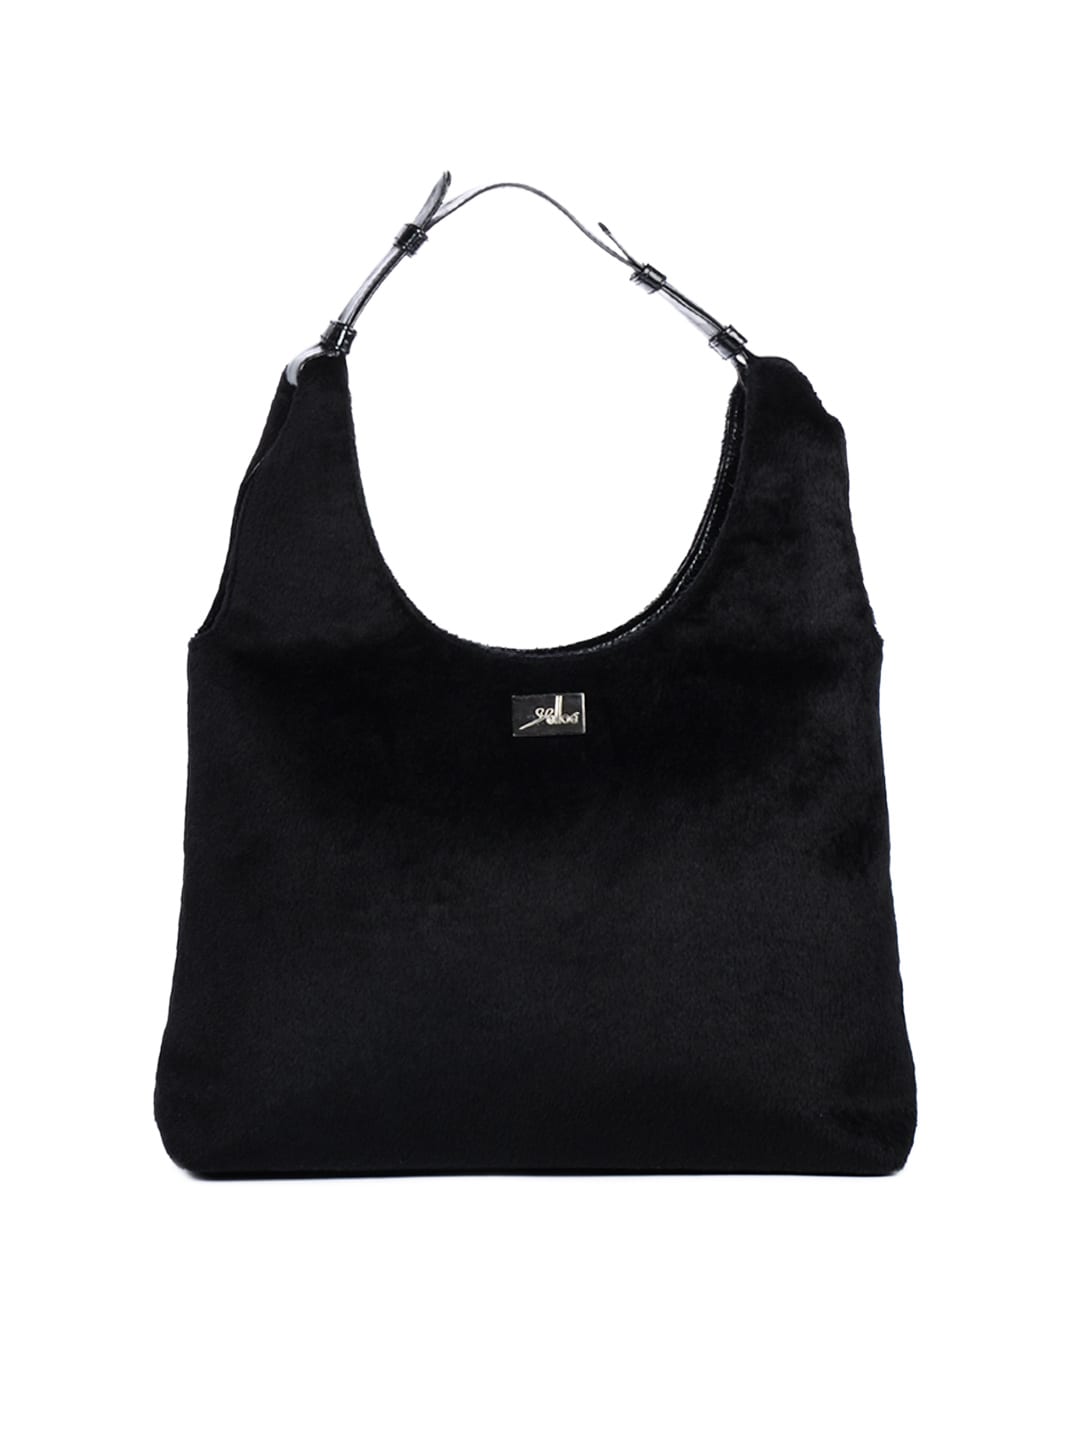 Yelloe Women Fur Black Handbag